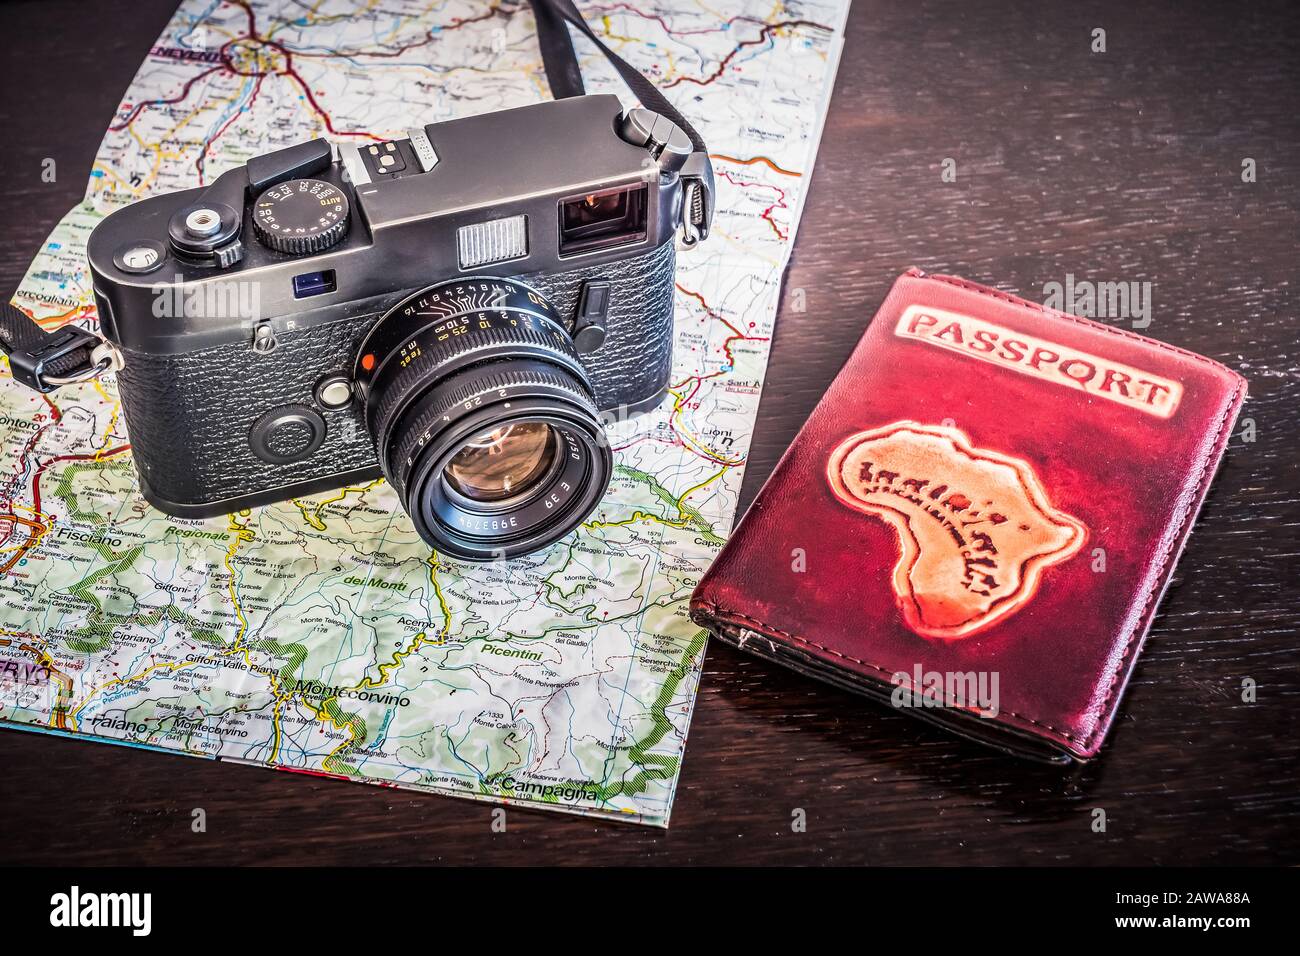 Reisefotografie-Konzept - Schwarz, Retro, Vintage-Fotokamera, Passport und Karte auf dunklem Holzhintergrund - Vintage-Look Stockfoto